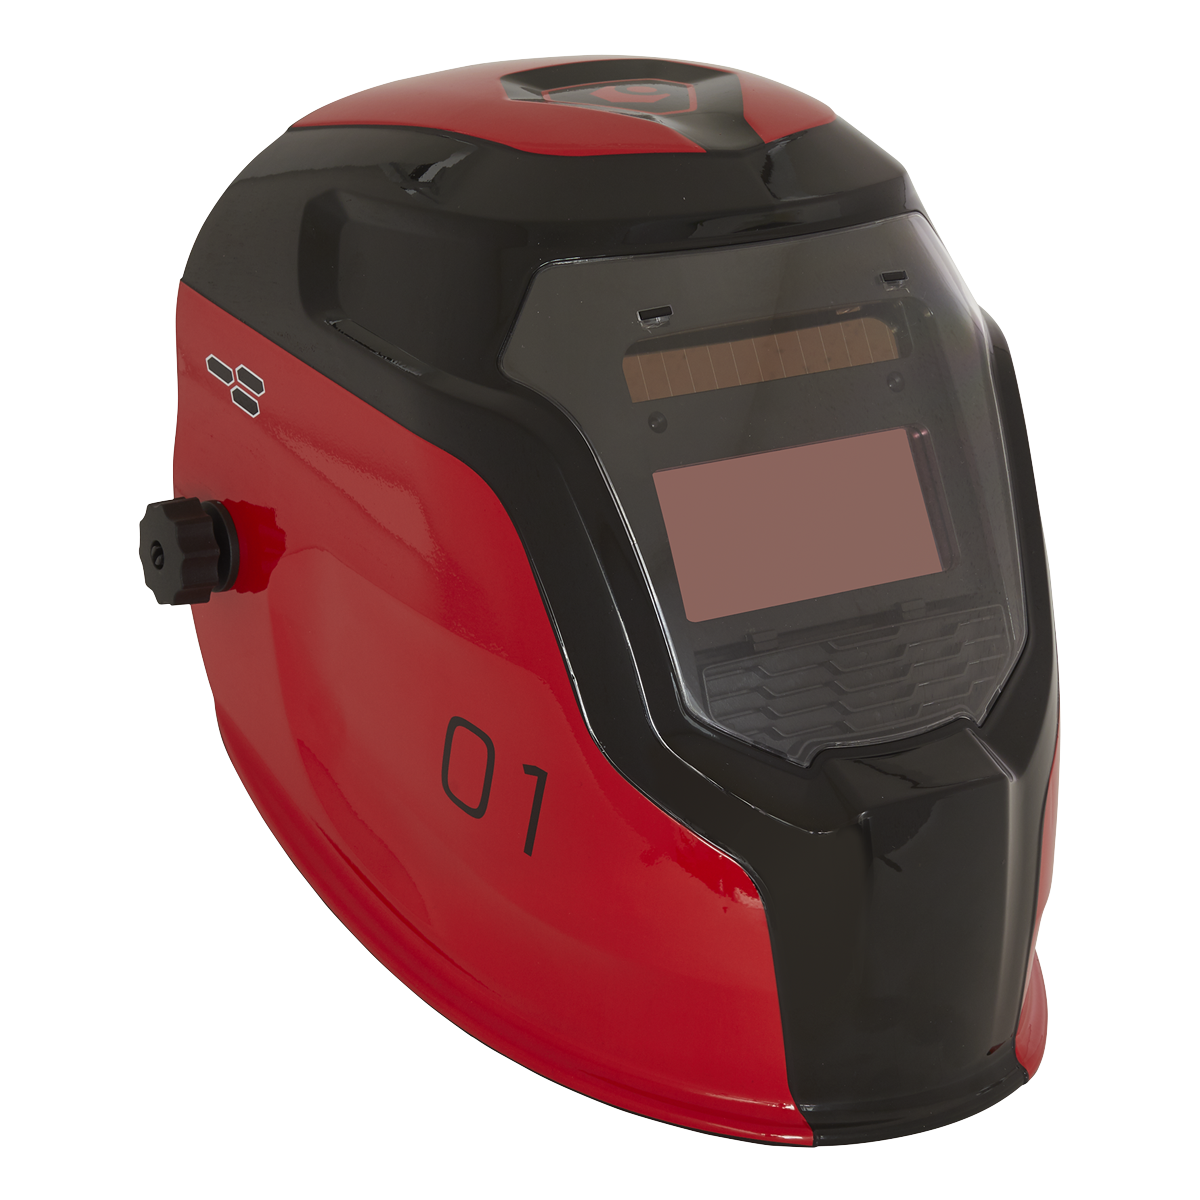 Welding Helmet Auto Darkening - Shade 9-13 - Red - PWH1 - Farming Parts